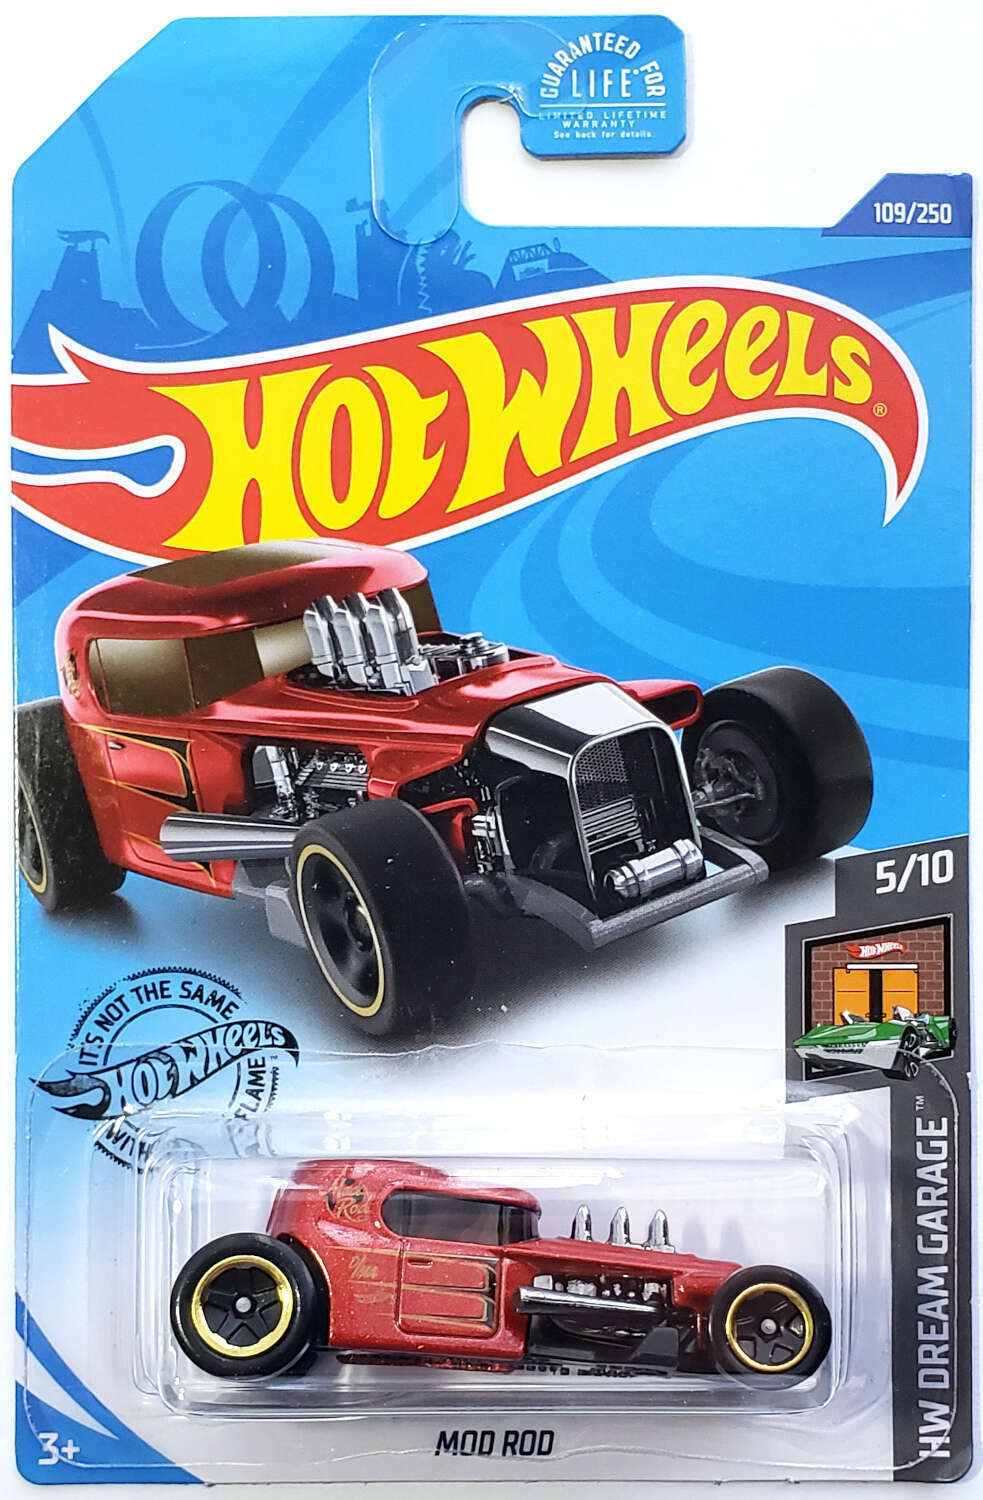 MOD ROD GHC24 2020 - HW Dream Garage 5/10-109/250 Rot Hot Wheels 